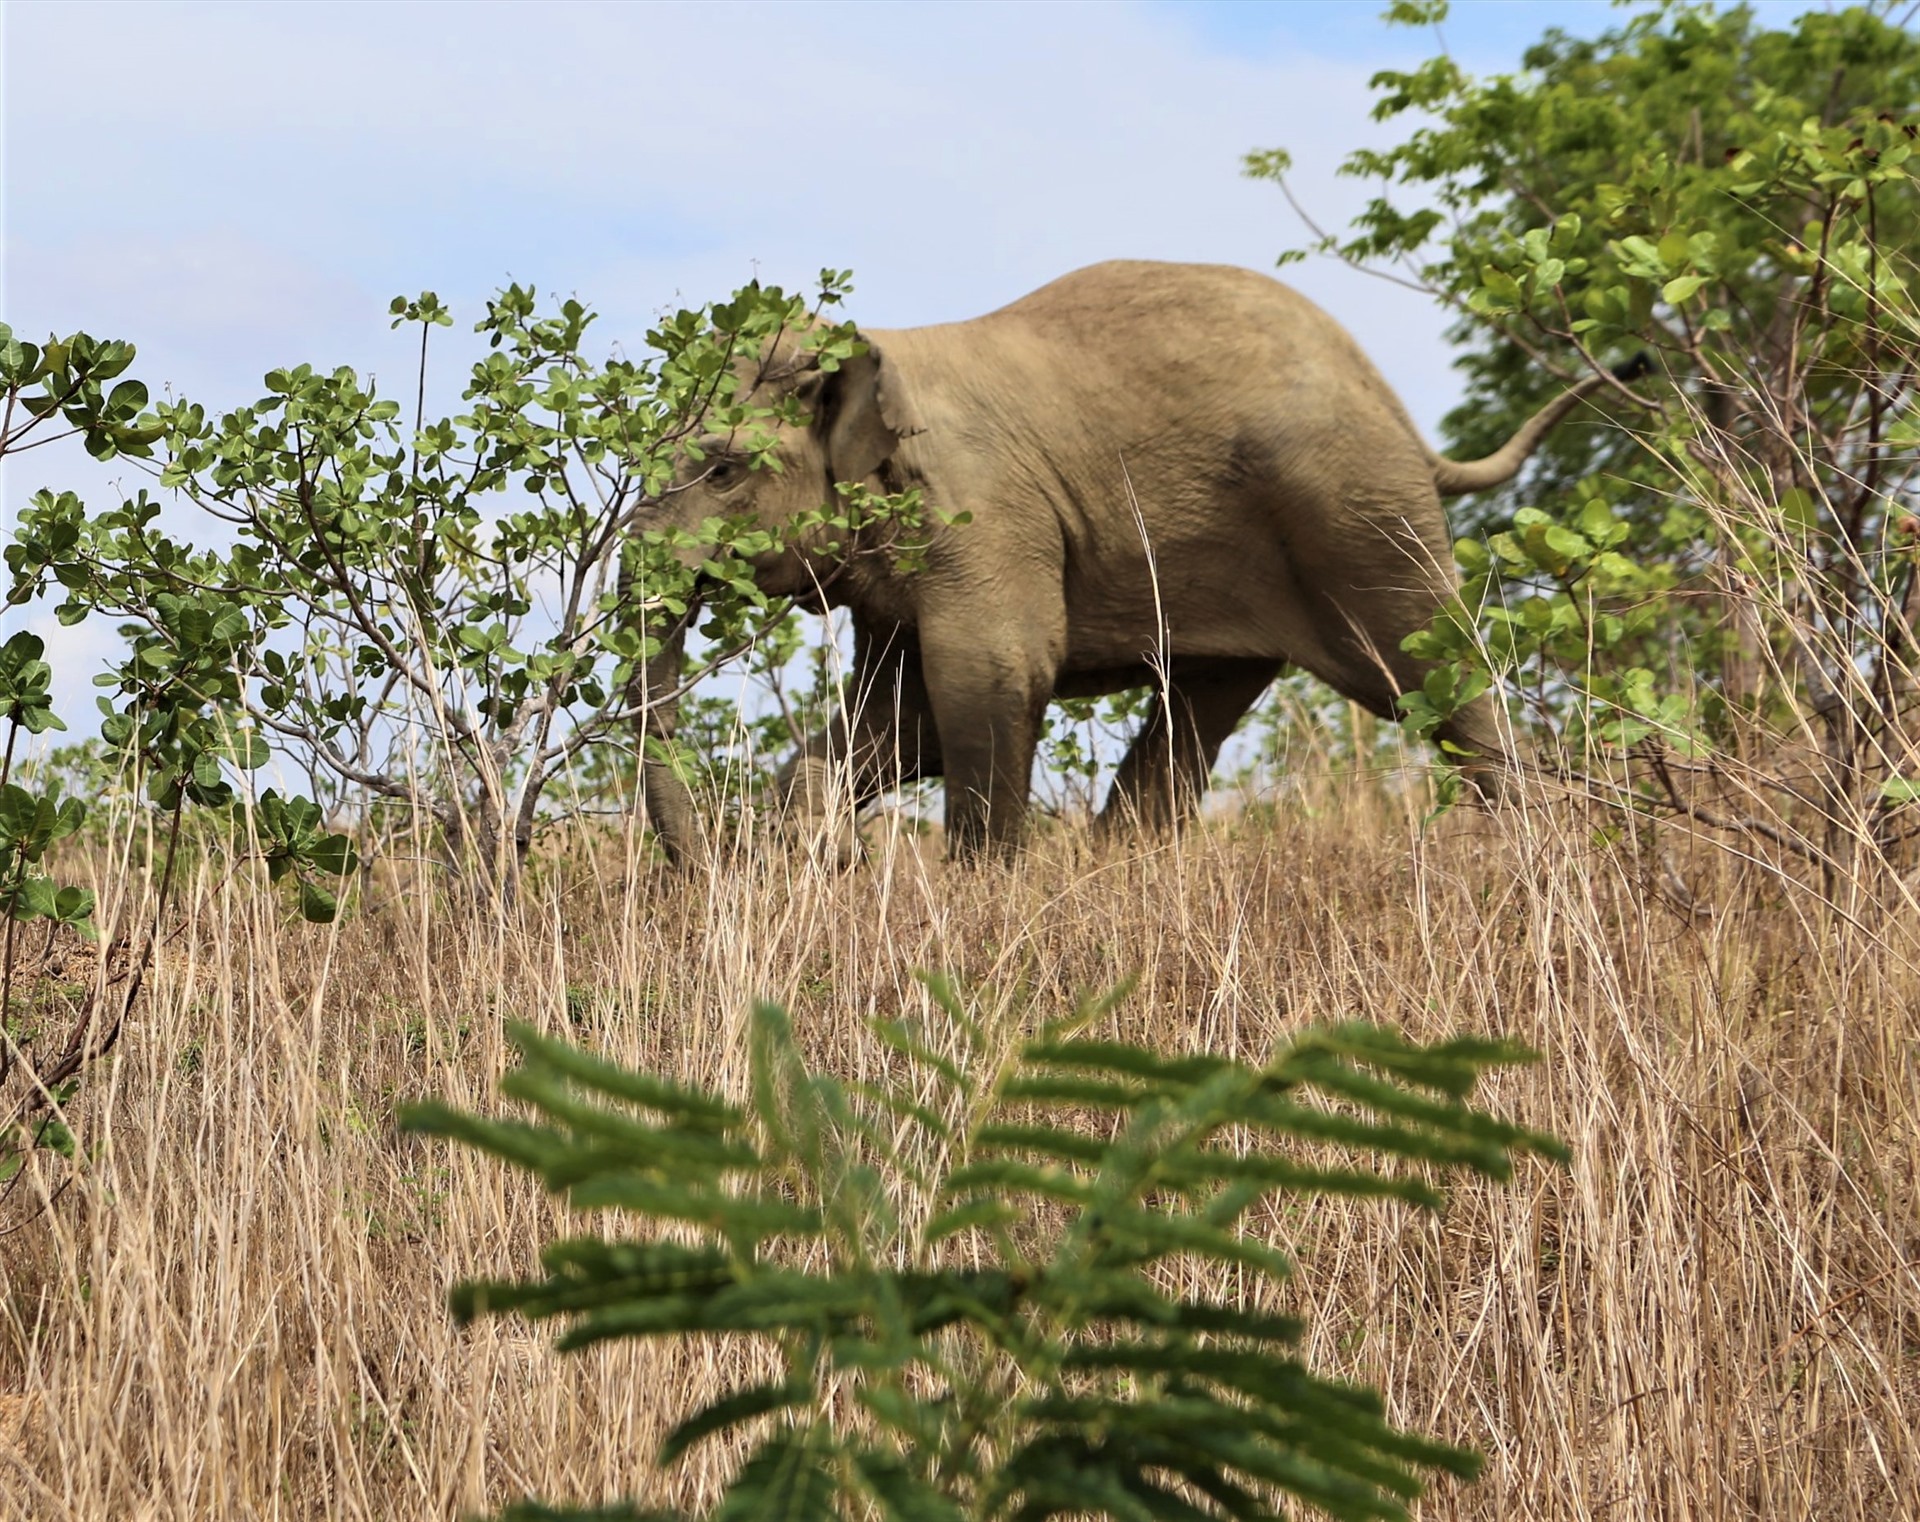 Chú voi rừng CưSút sống tại Vườn quốc gia Yok Đôn (giáp huyện Cư Jút, Đắk Nông) đang có một vài vết thương khá nghiêm trọng. Ảnh: Vân Hồng